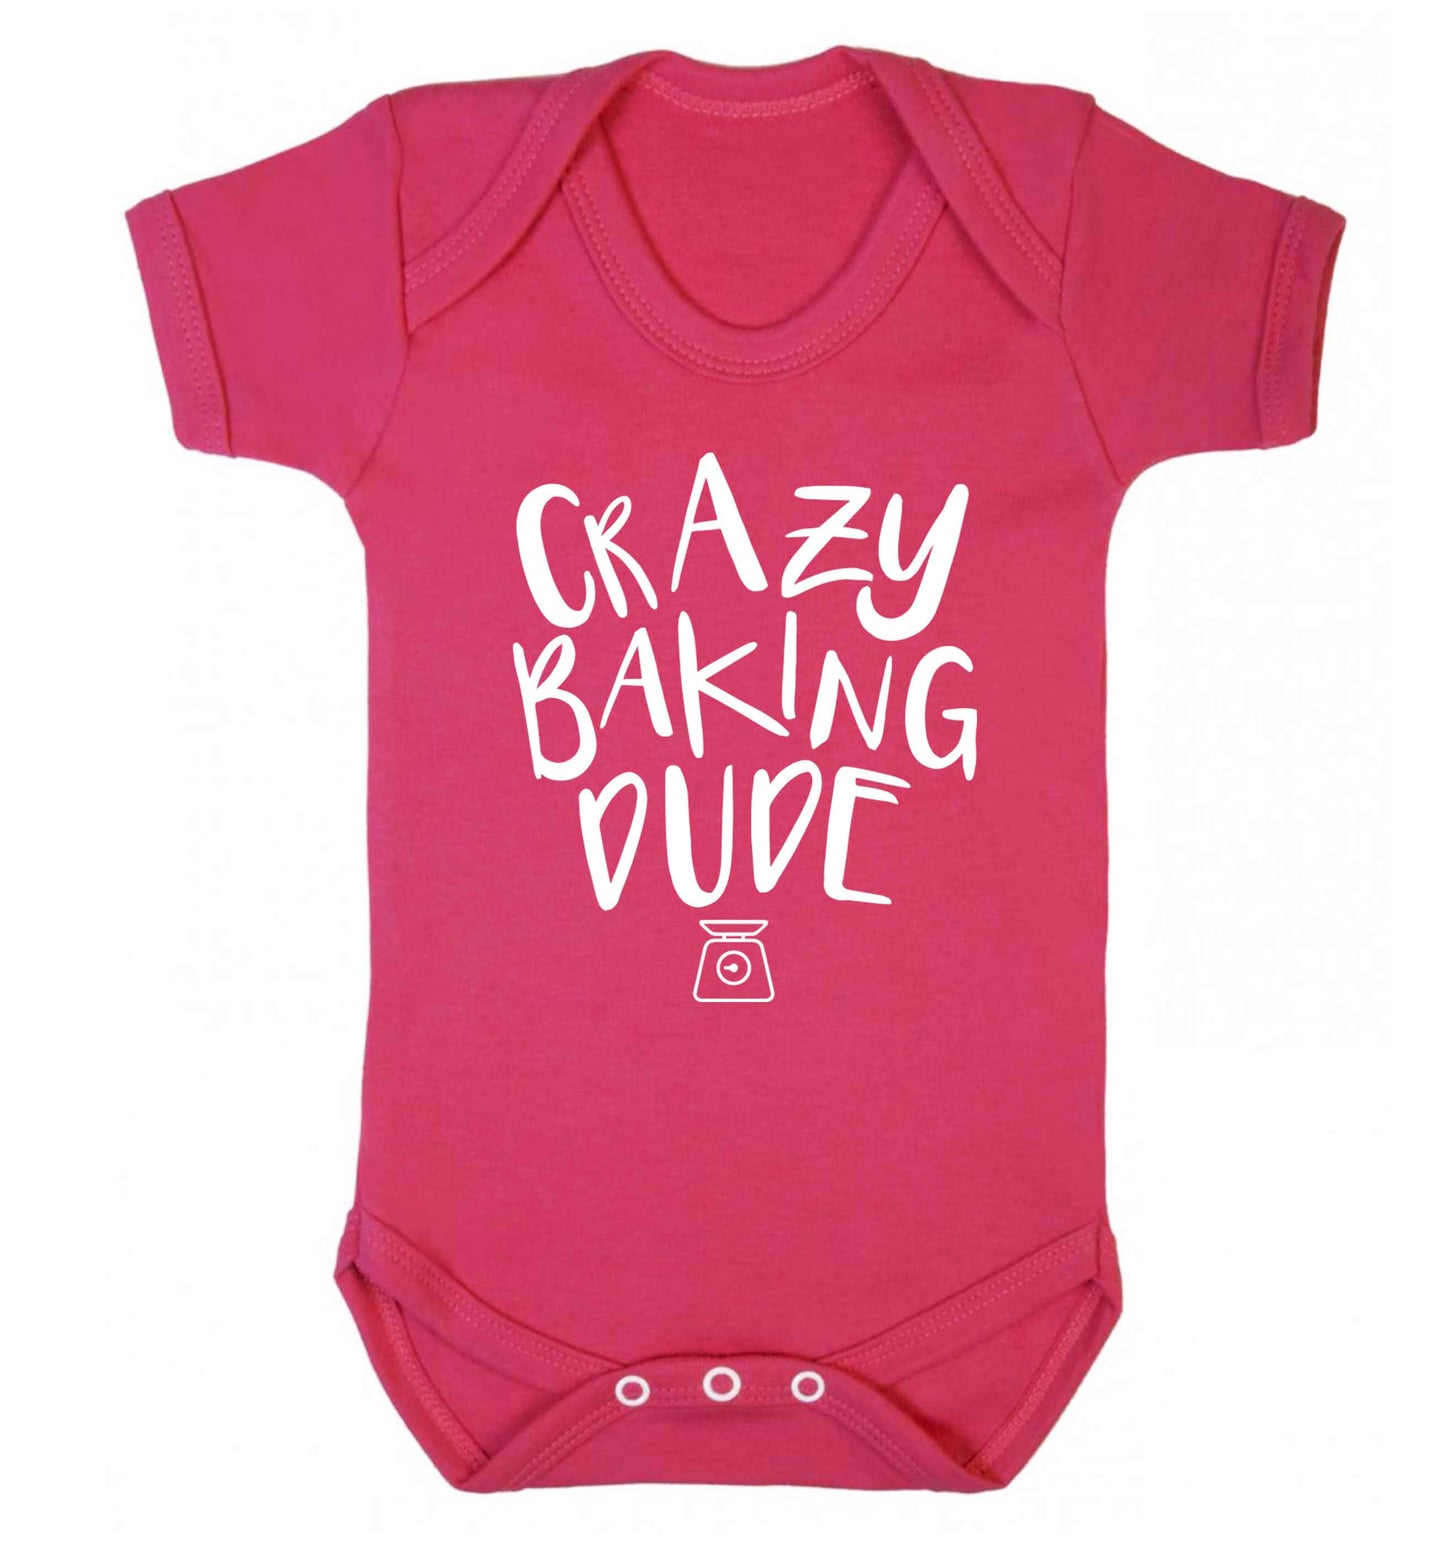 Crazy baking dude Baby Vest dark pink 18-24 months